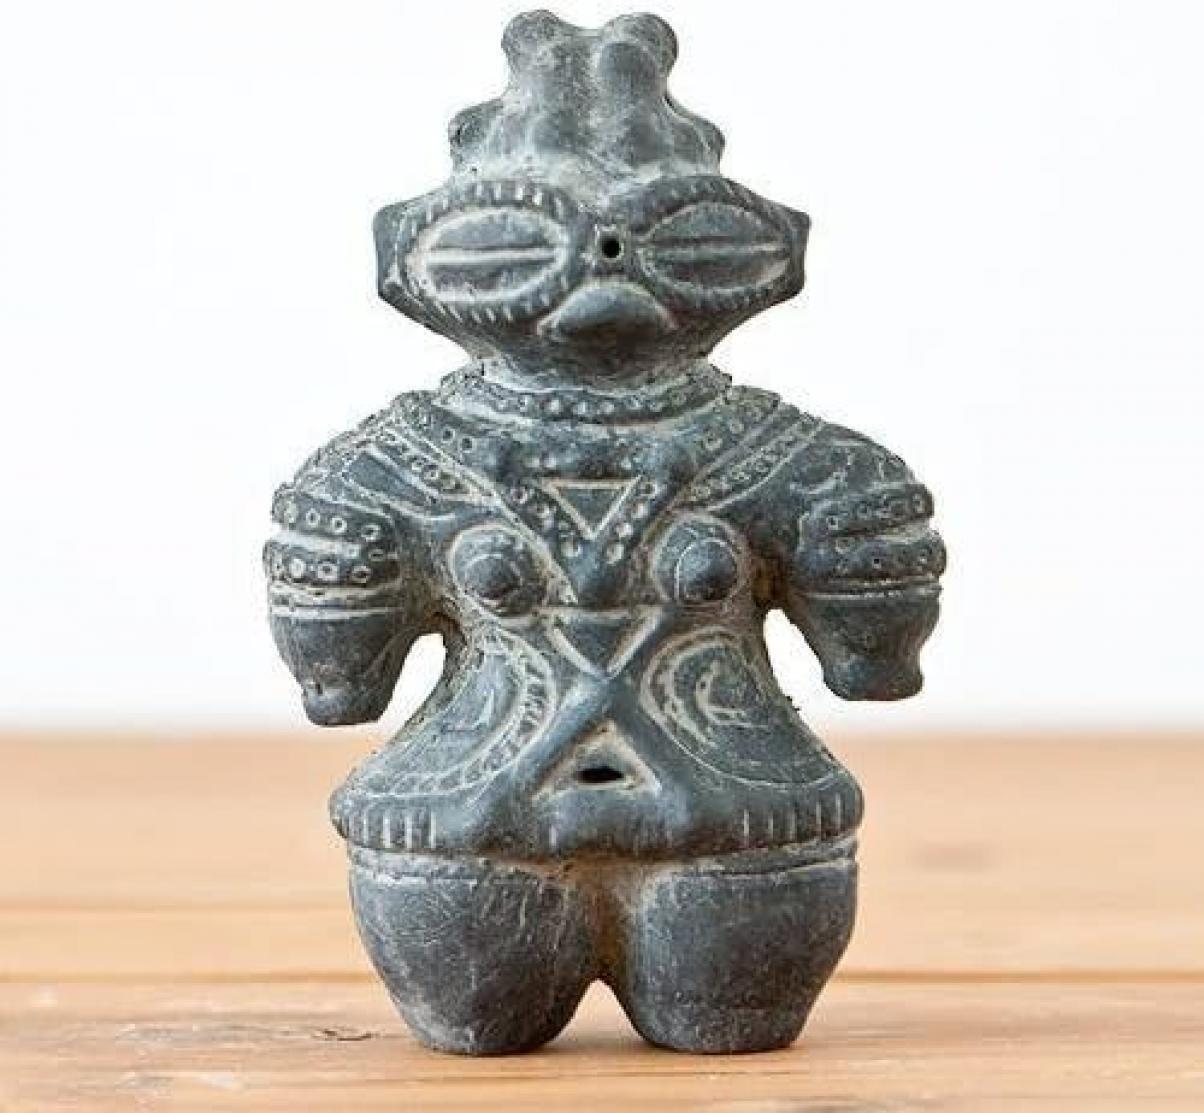 Haniwa Clay Figurine Jomon Period Ornament 11.7cm Clay Statue Replica Japan New